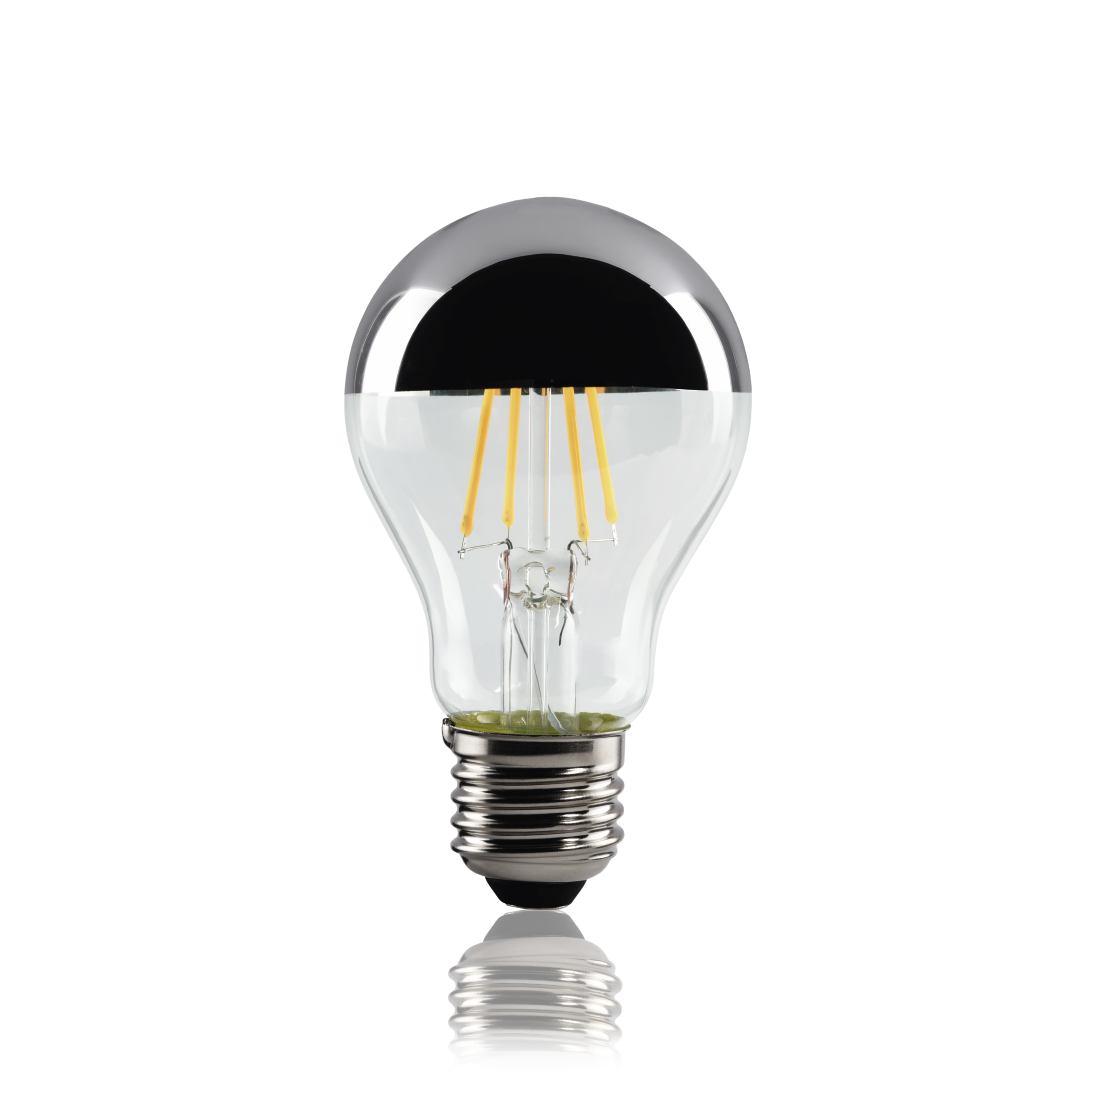 abx2 High-Res Image 2 - Xavax, Ampoule filament LED, E27, 400lm rempl. ampoule incand., 35W, blc chd